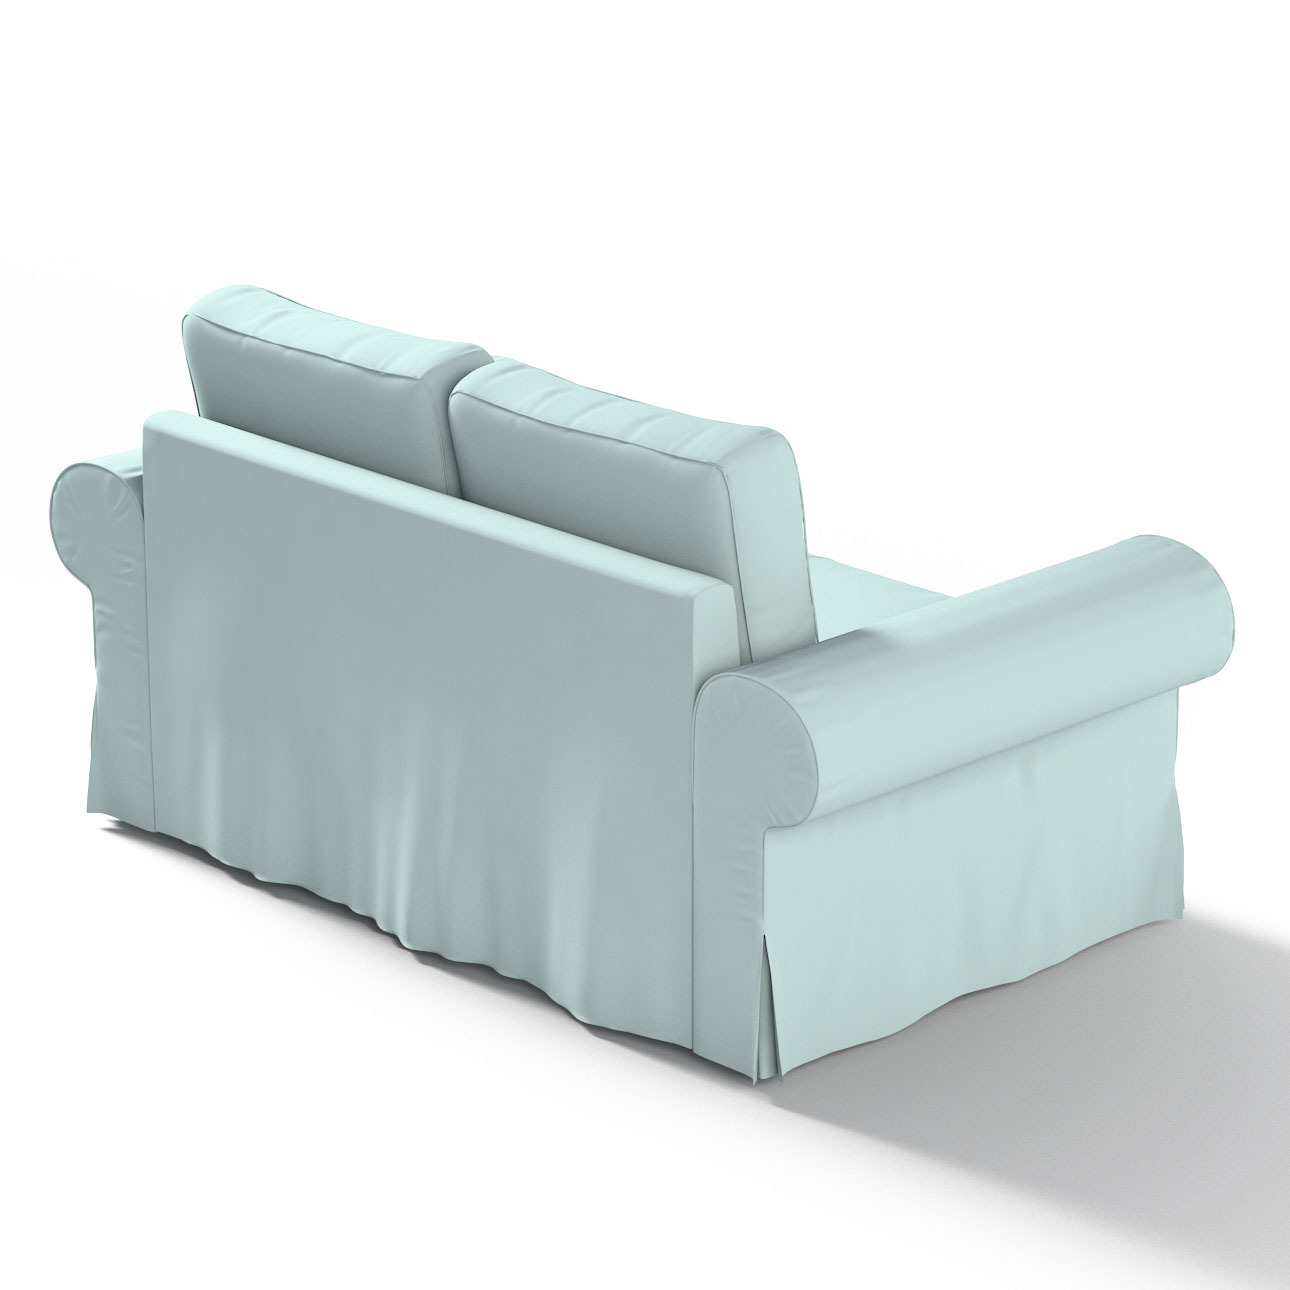 Bezug für Backabro 2-Sitzer Sofa ausklappbar, hellblau, Bezug für Backabro günstig online kaufen